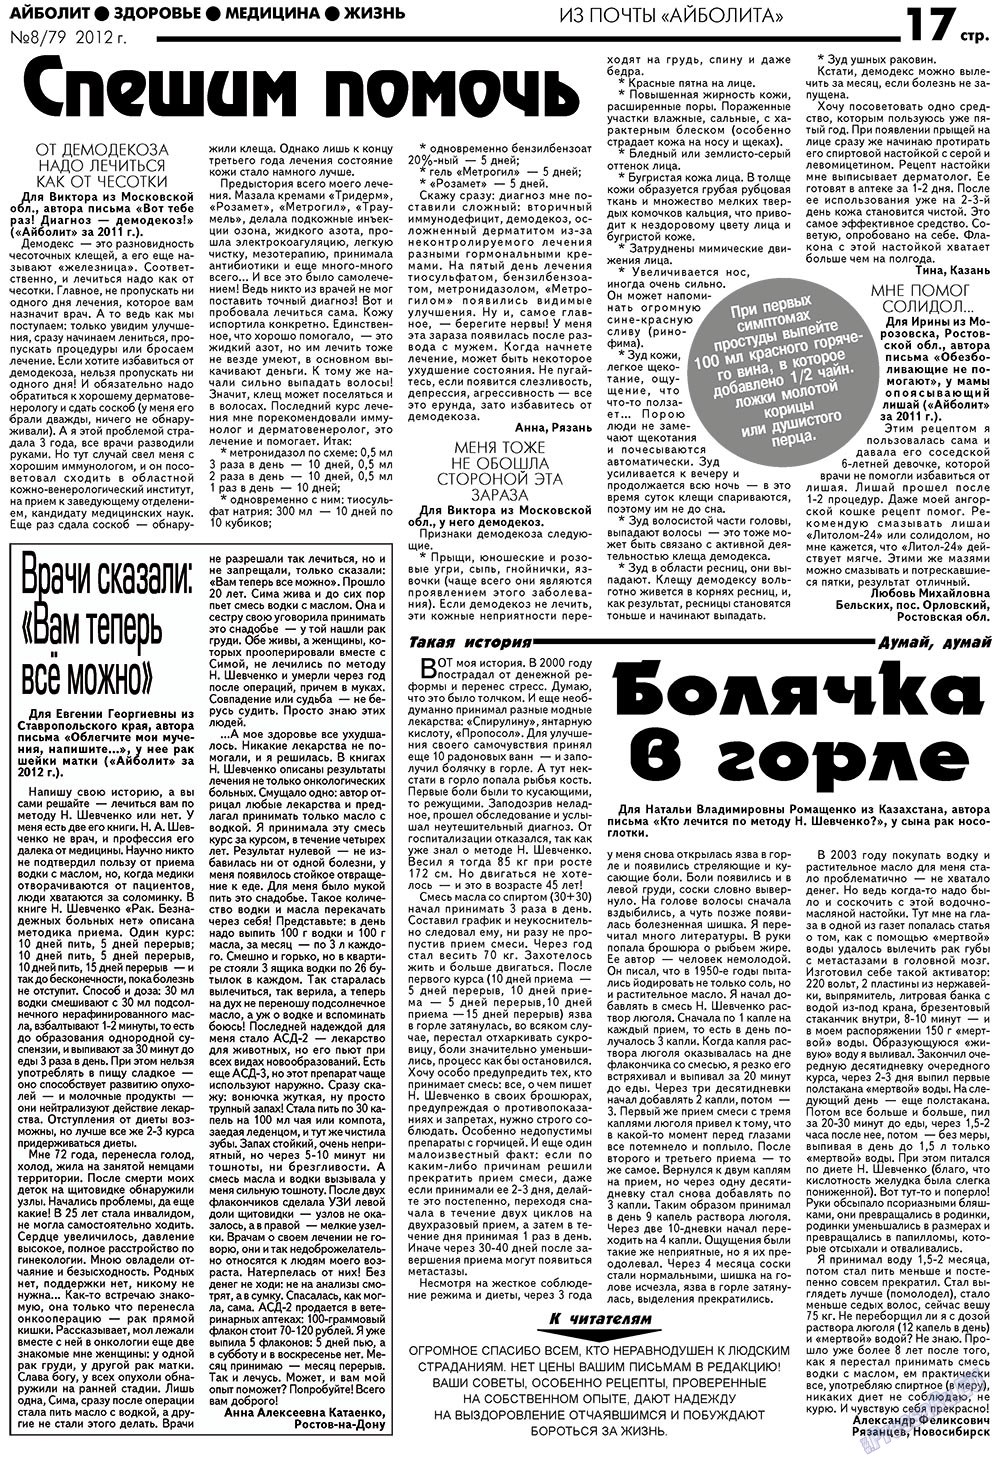 АйБолит, газета. 2012 №8 стр.17